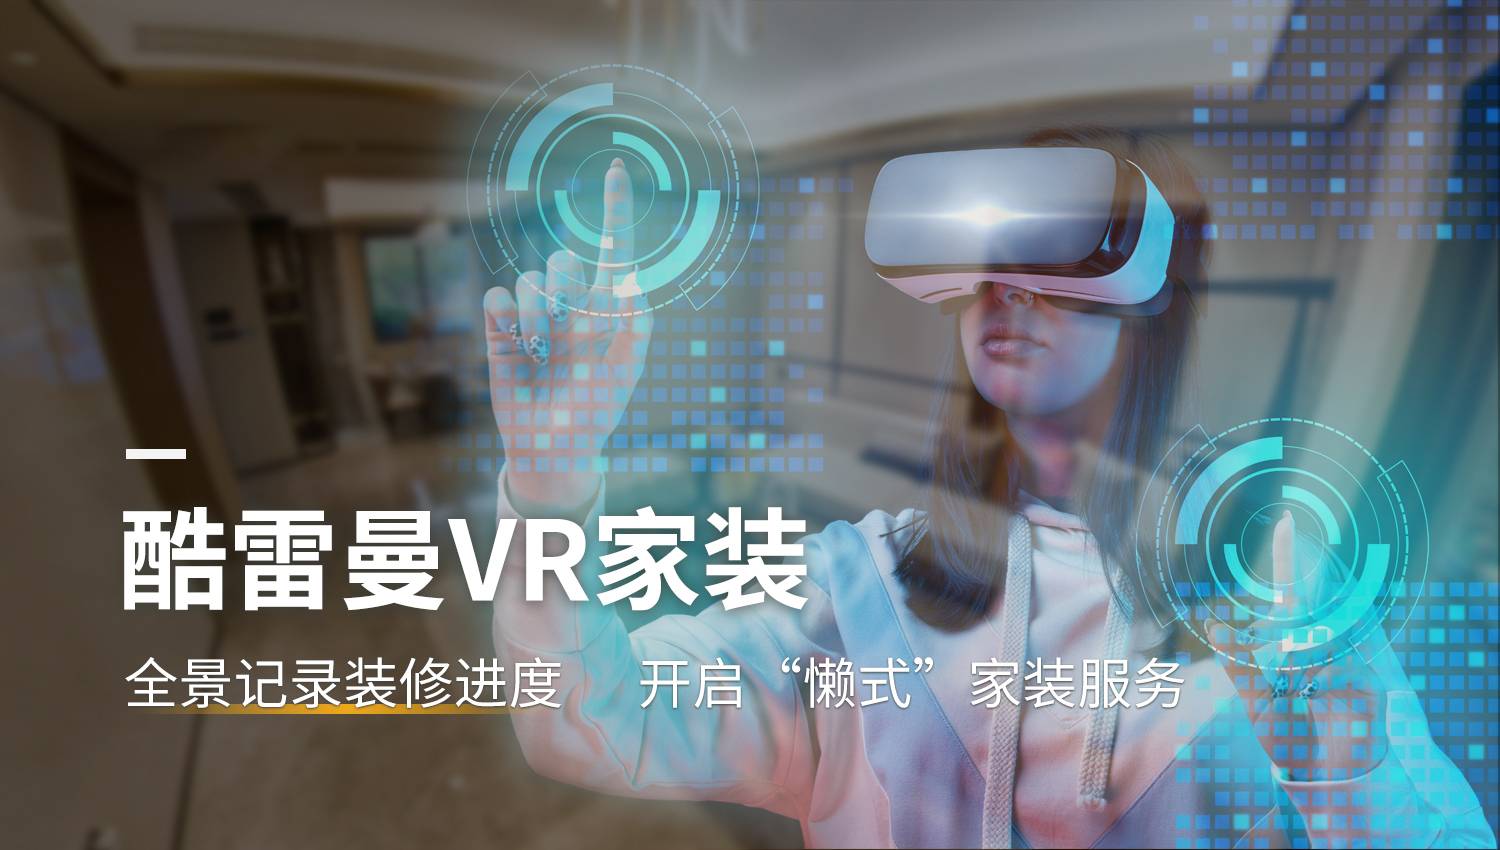 VR漫游的商业价值主要体现在哪些方面？